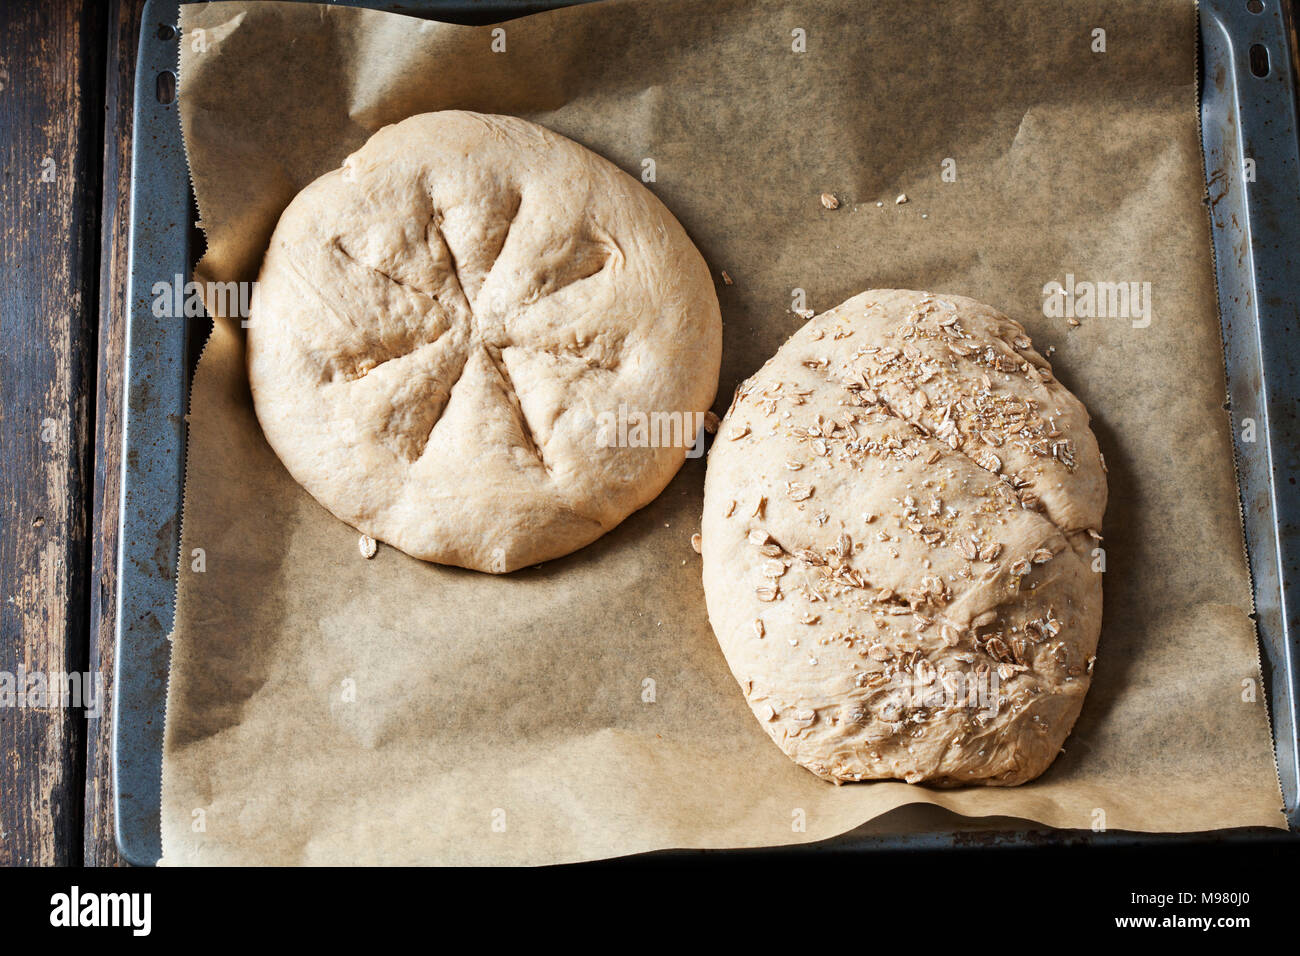 Deux matières miches de pain d'épeautre sur la plaque de cuisson Banque D'Images